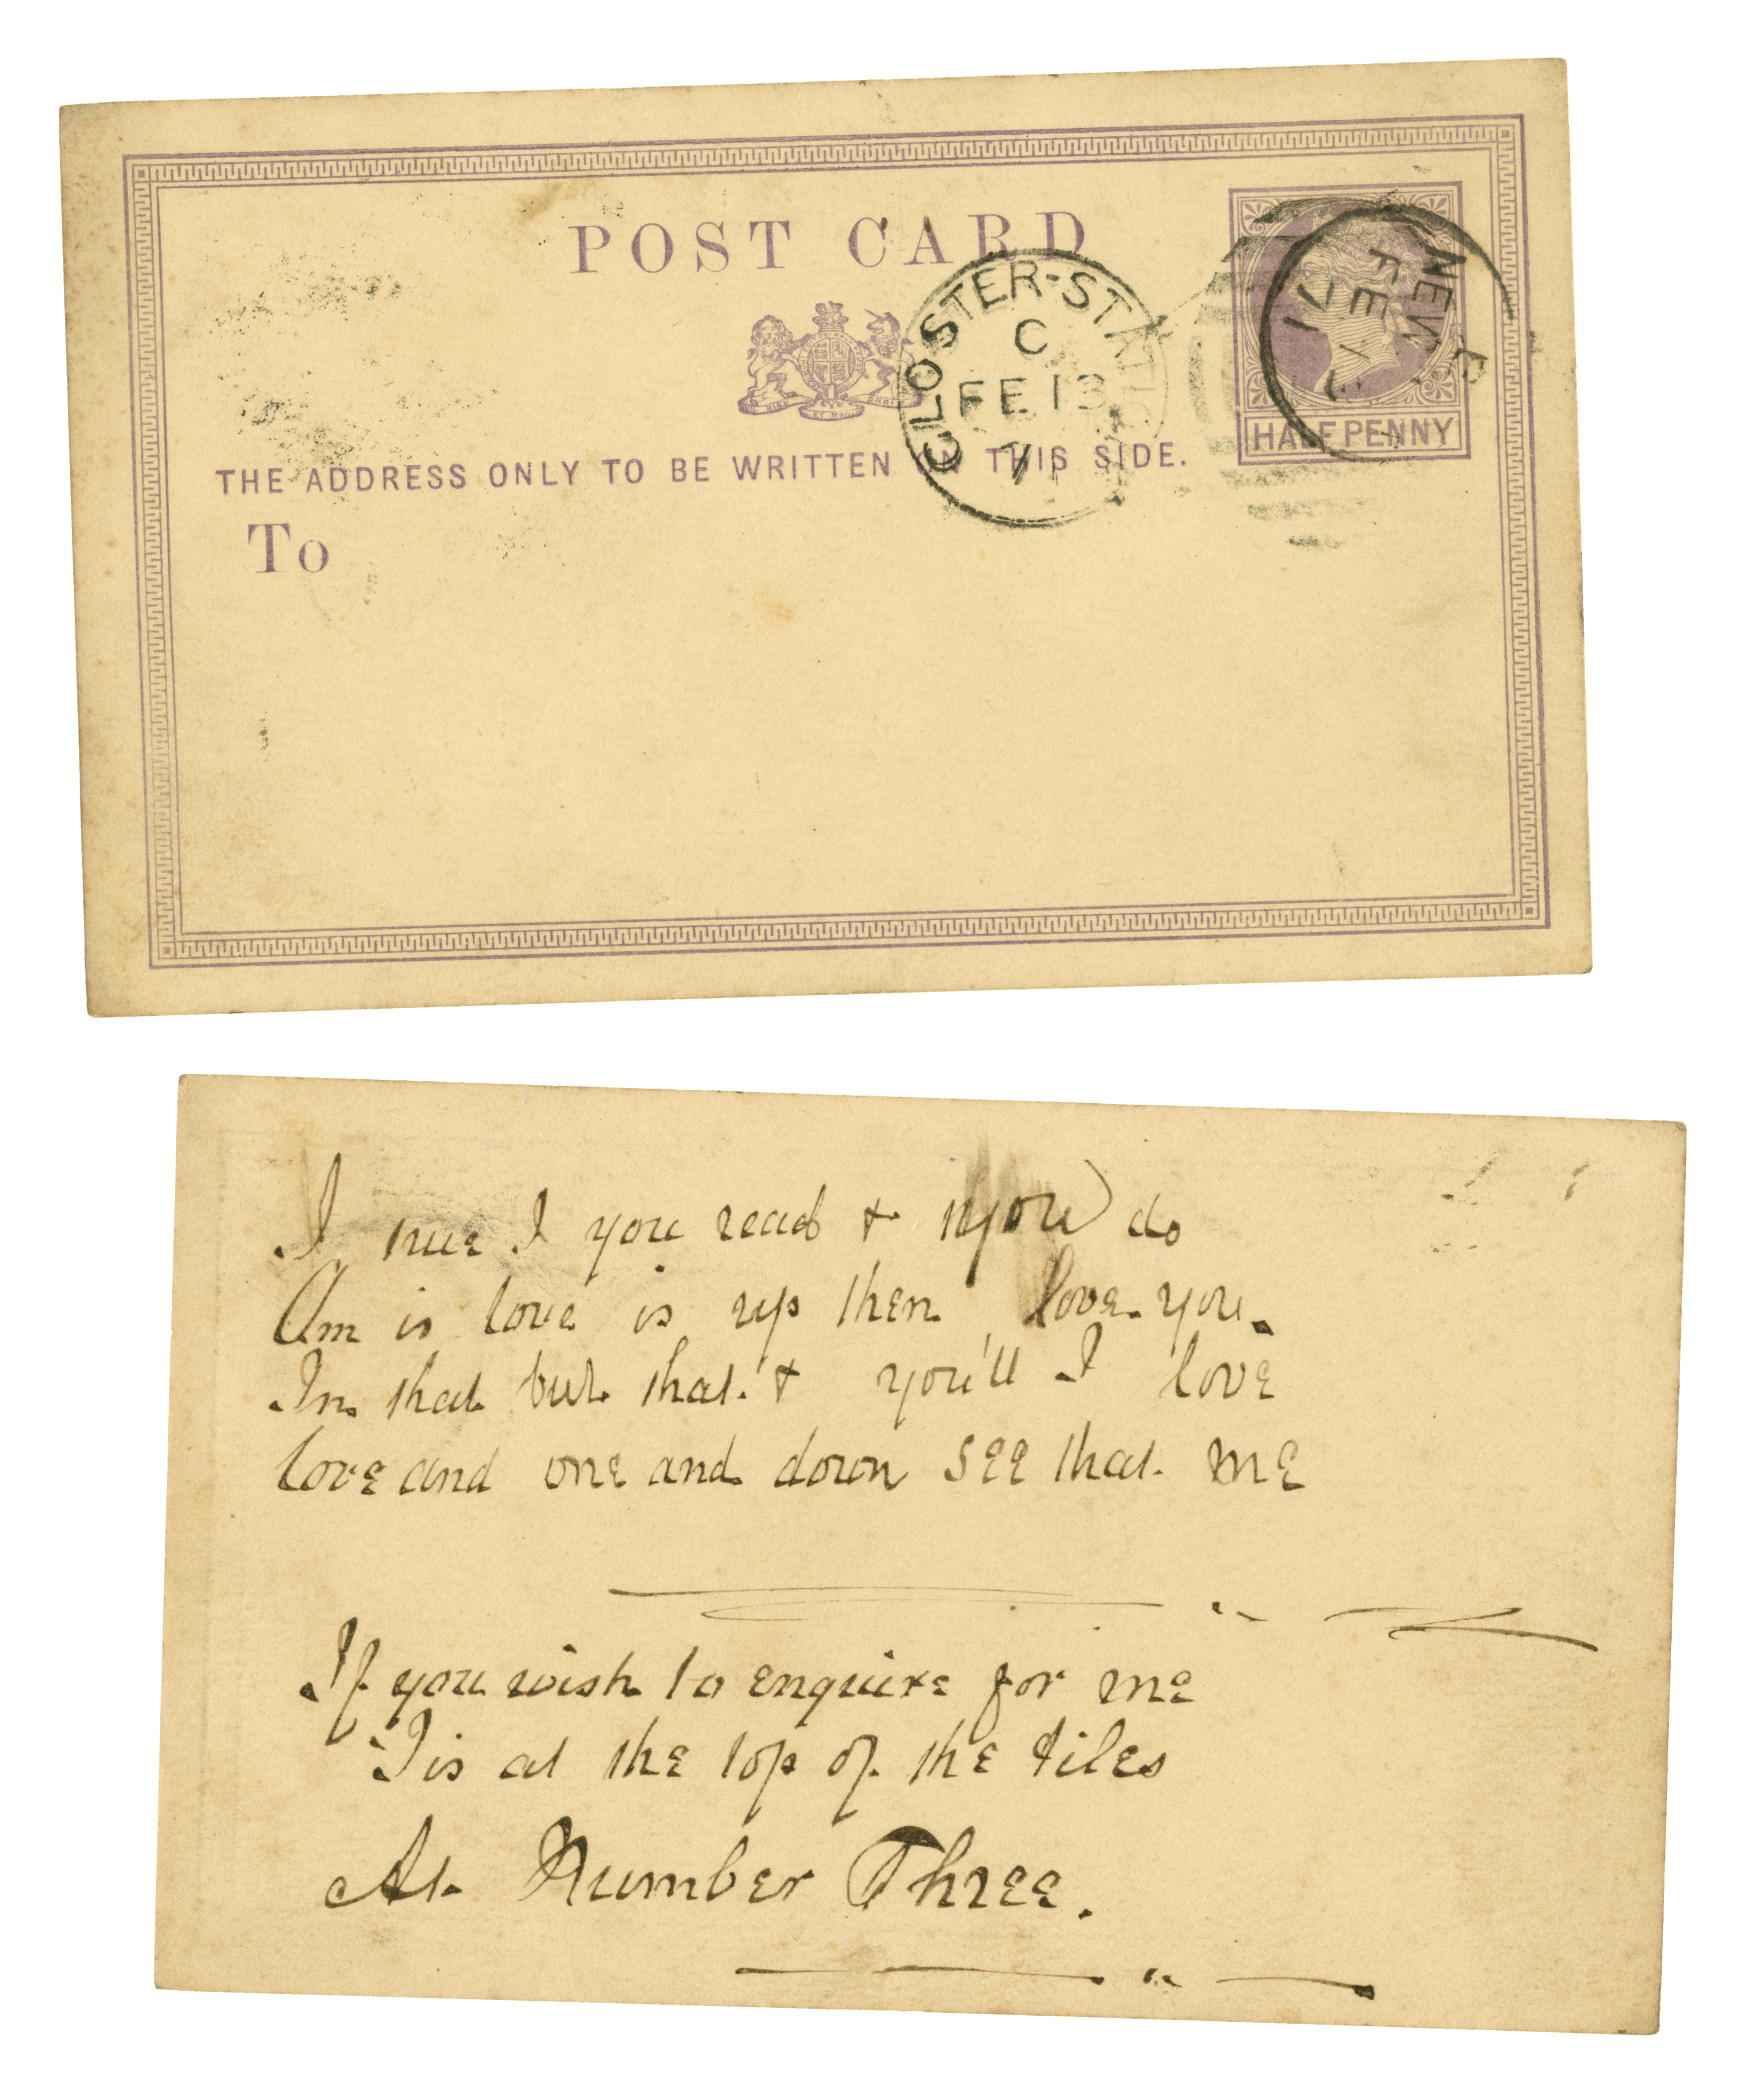 En el transcurso del siglo XIX en los países anglosajones se inició la tradición de intercambiar postales con frases de amor y se consagró el Día de los Enamorados